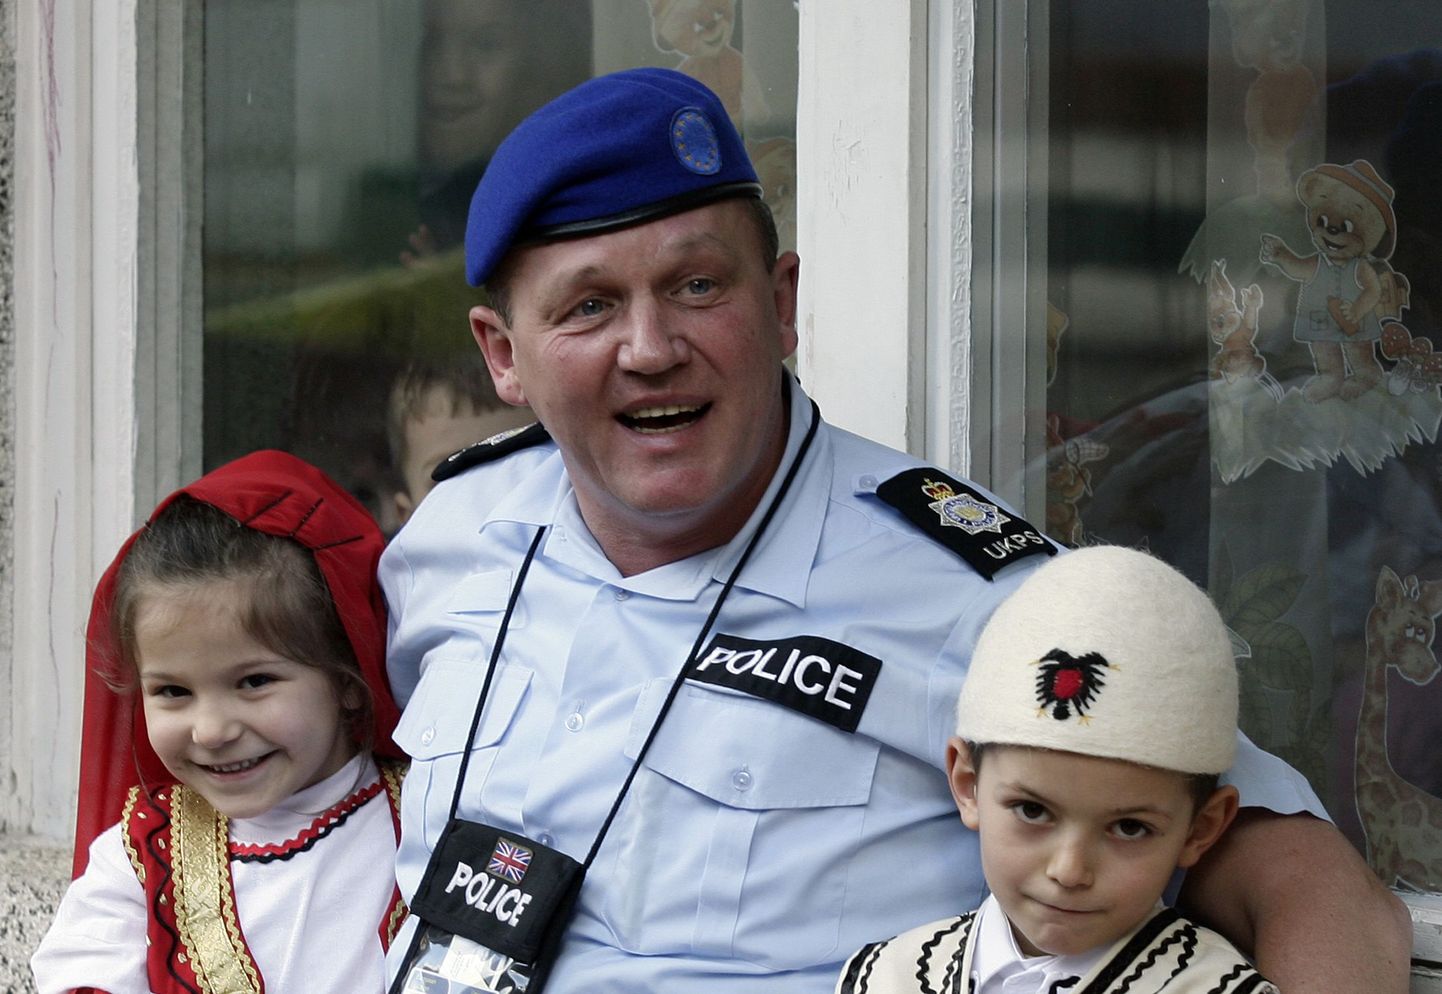 Kosovos ELi politseimissioonil teeniv britt kohalike lastega.